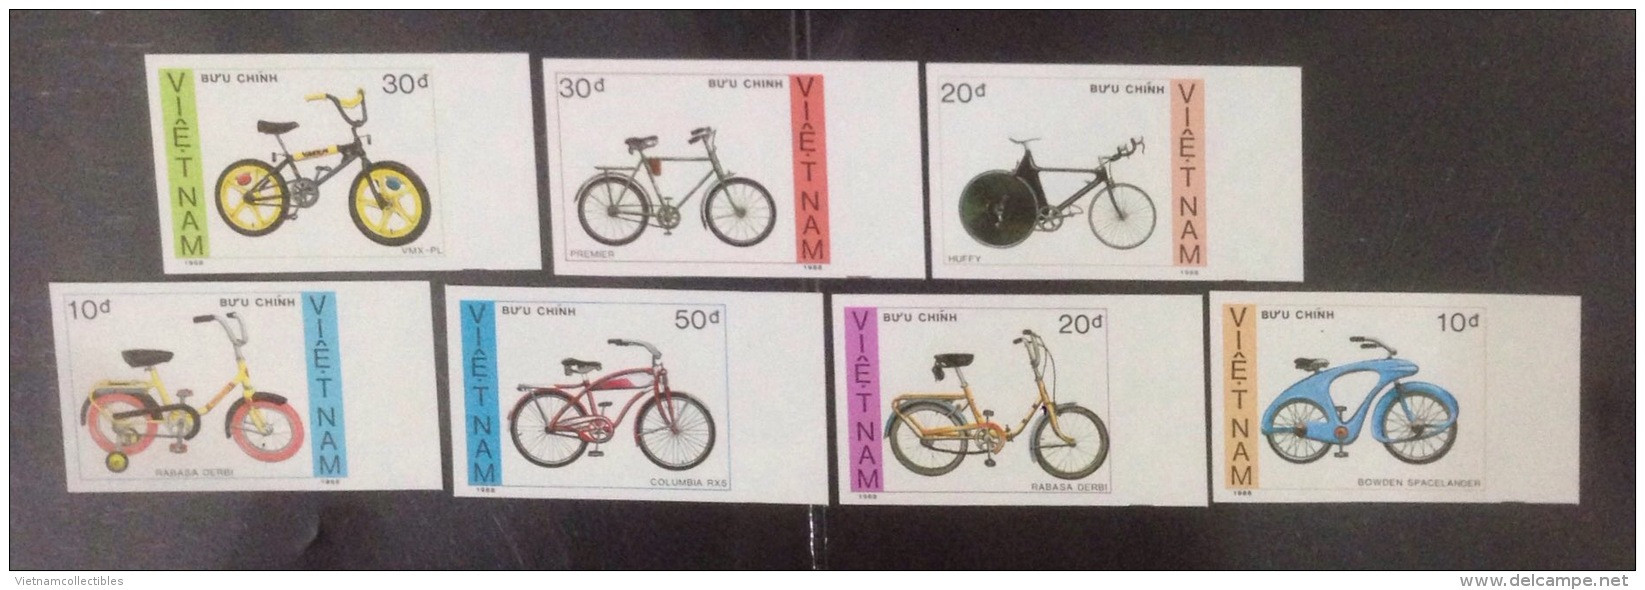 Vietnam Viet Nam MNH Imperf Stamps 1989 : Bike / Bicycle (Ms566) - Vietnam